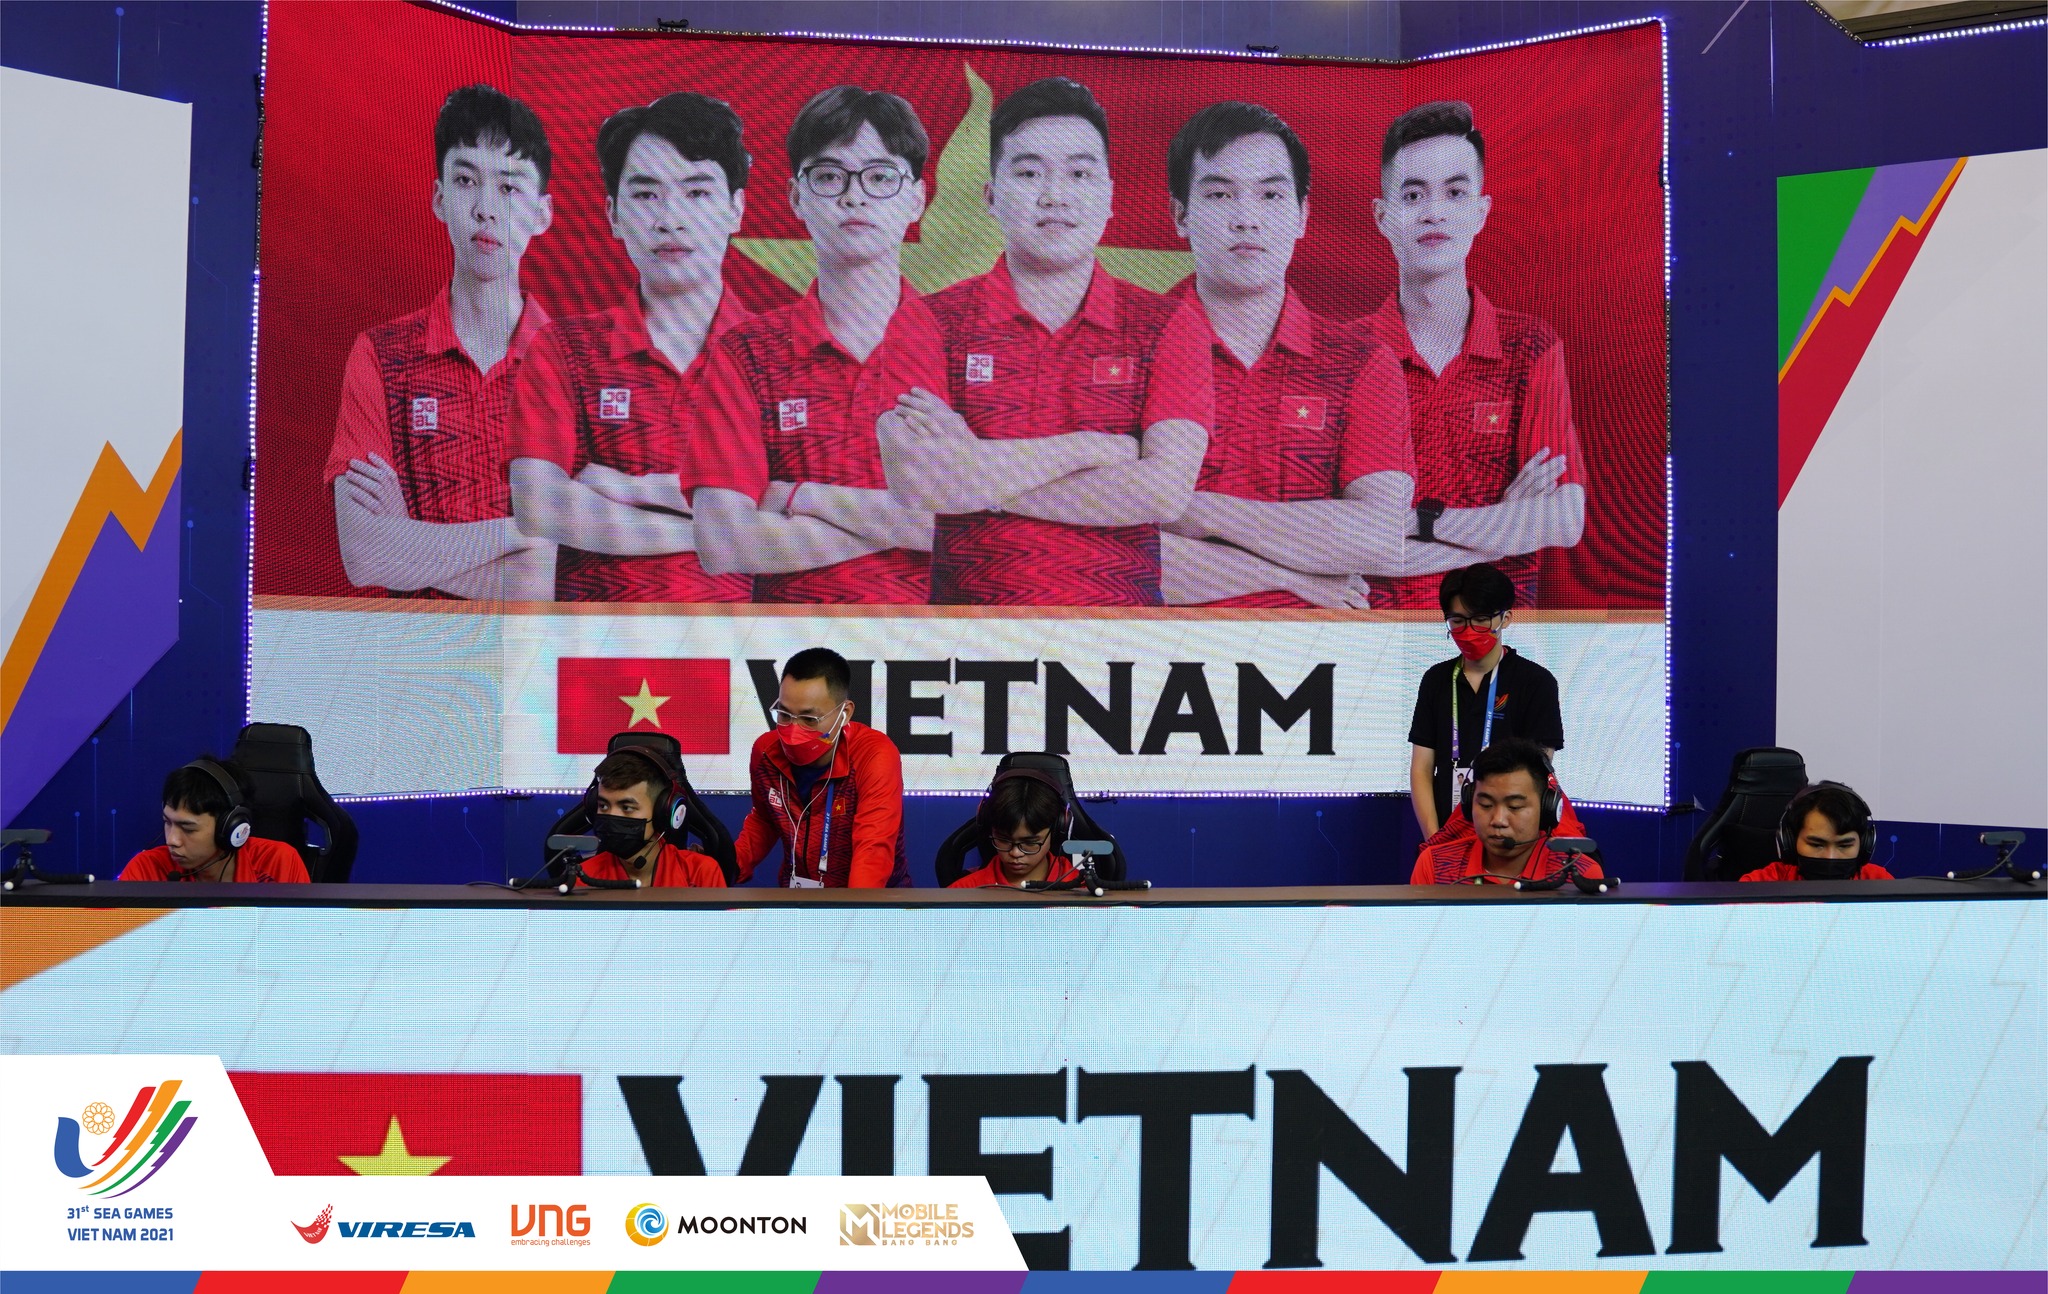 Hành trình của đội tuyển Việt Nam tại SEA Games lần này